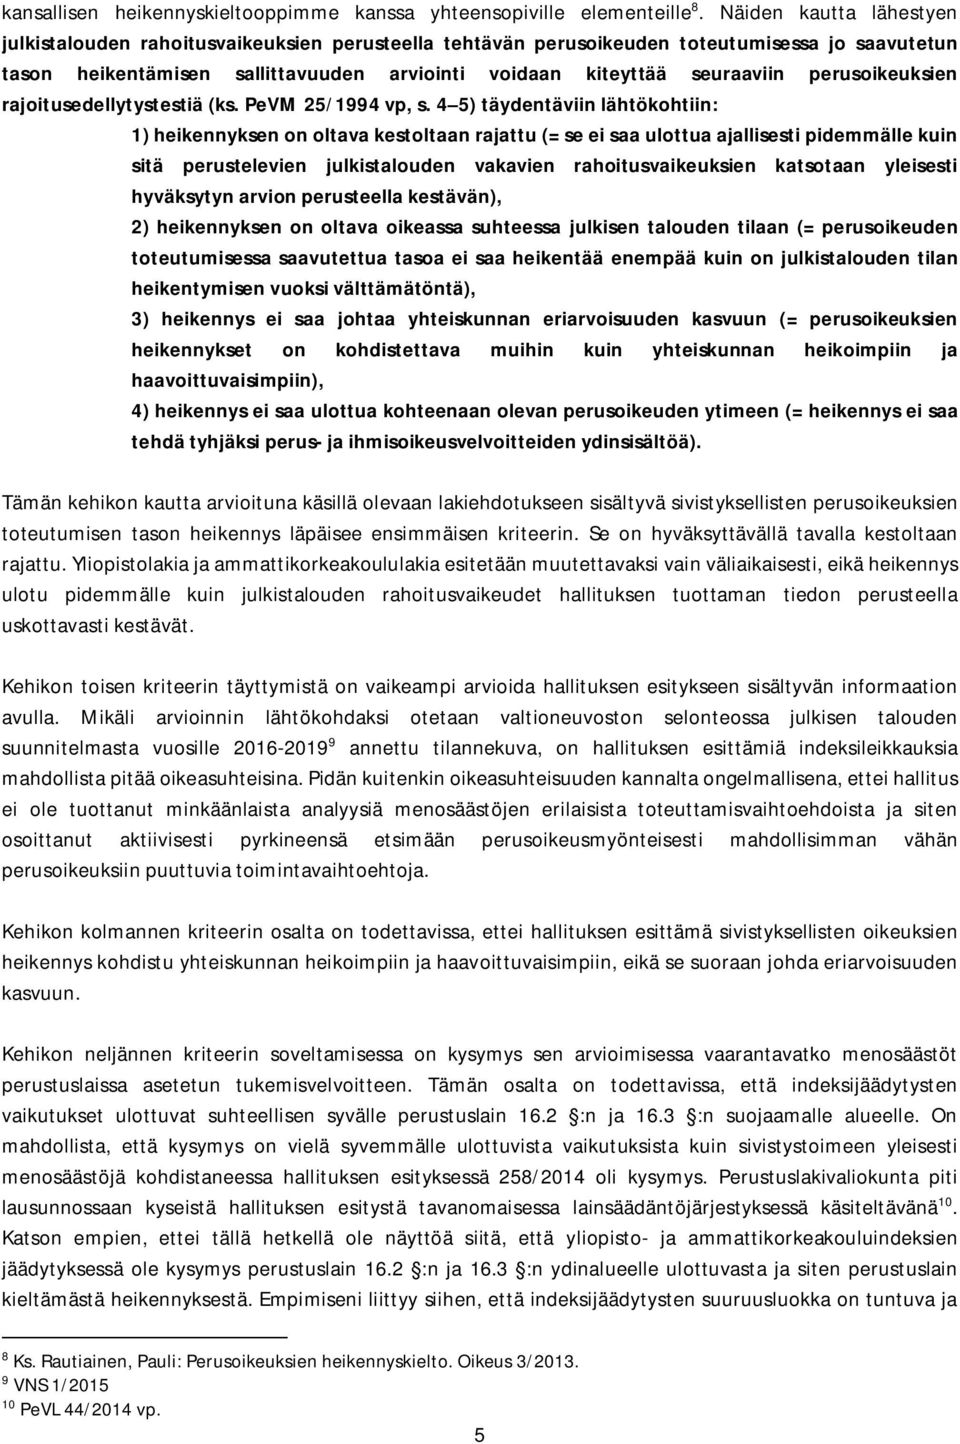 perusoikeuksien rajoitusedellytystestiä (ks. PeVM 25/1994 vp, s.